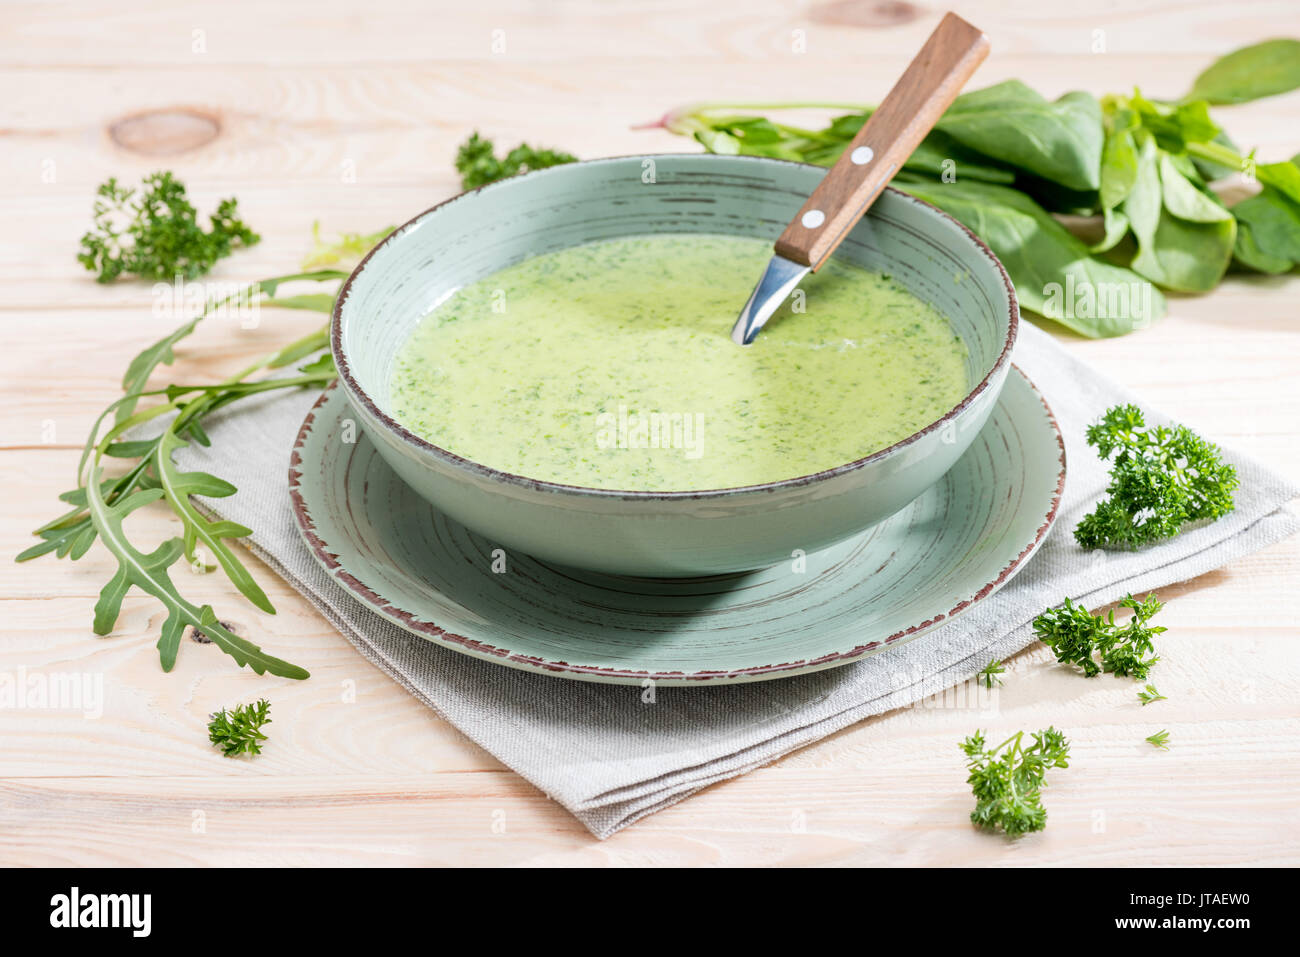 Fresca zuppa verde con gli spinaci, il prezzemolo e la rucola in ciotola sul tovagliolo sul tavolo in legno Foto Stock